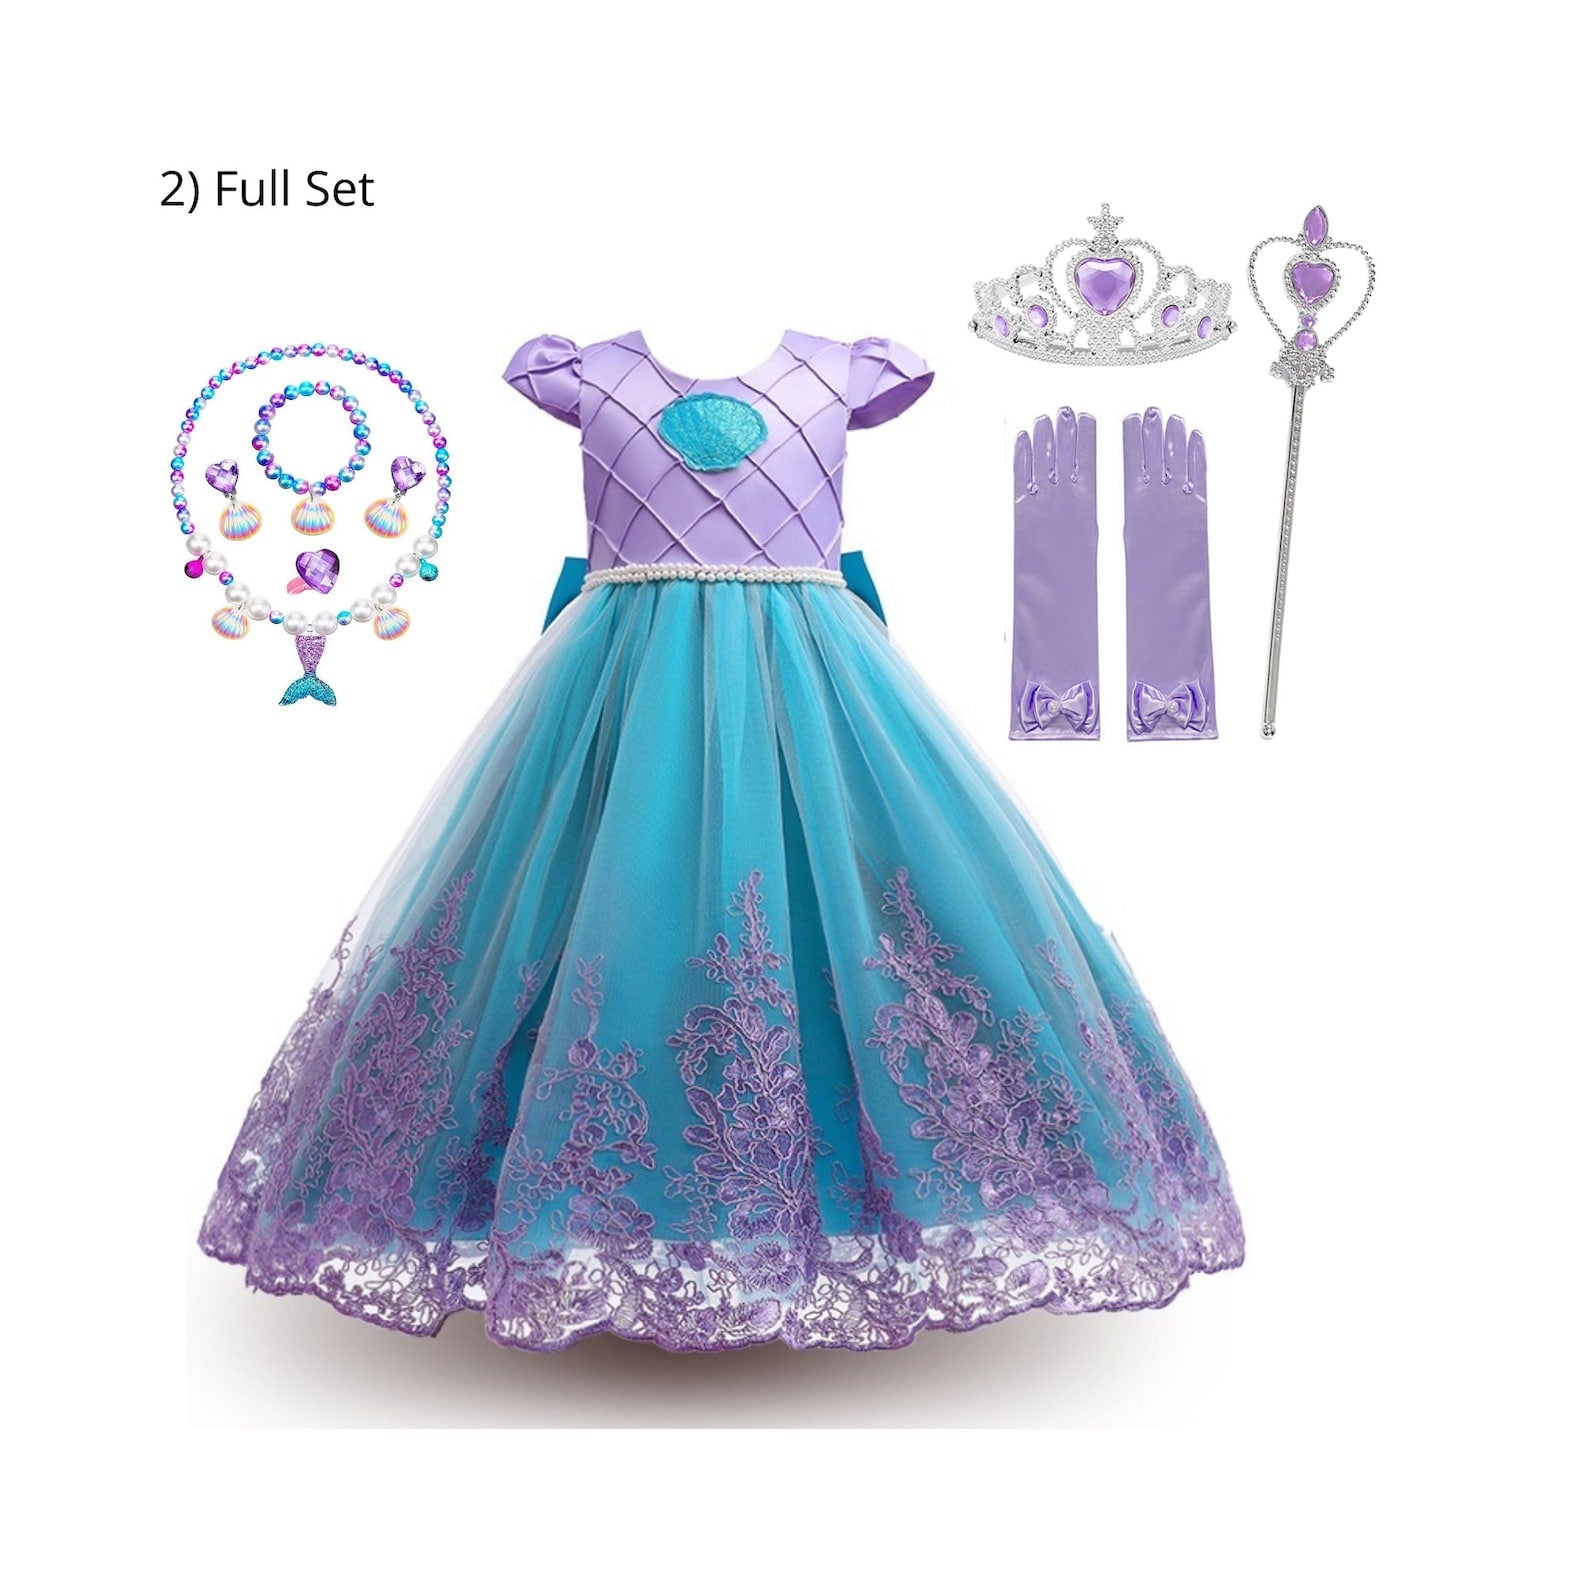 Little Mermaid Ariel dress - The ultimate Disney Inspired Costume Full Set